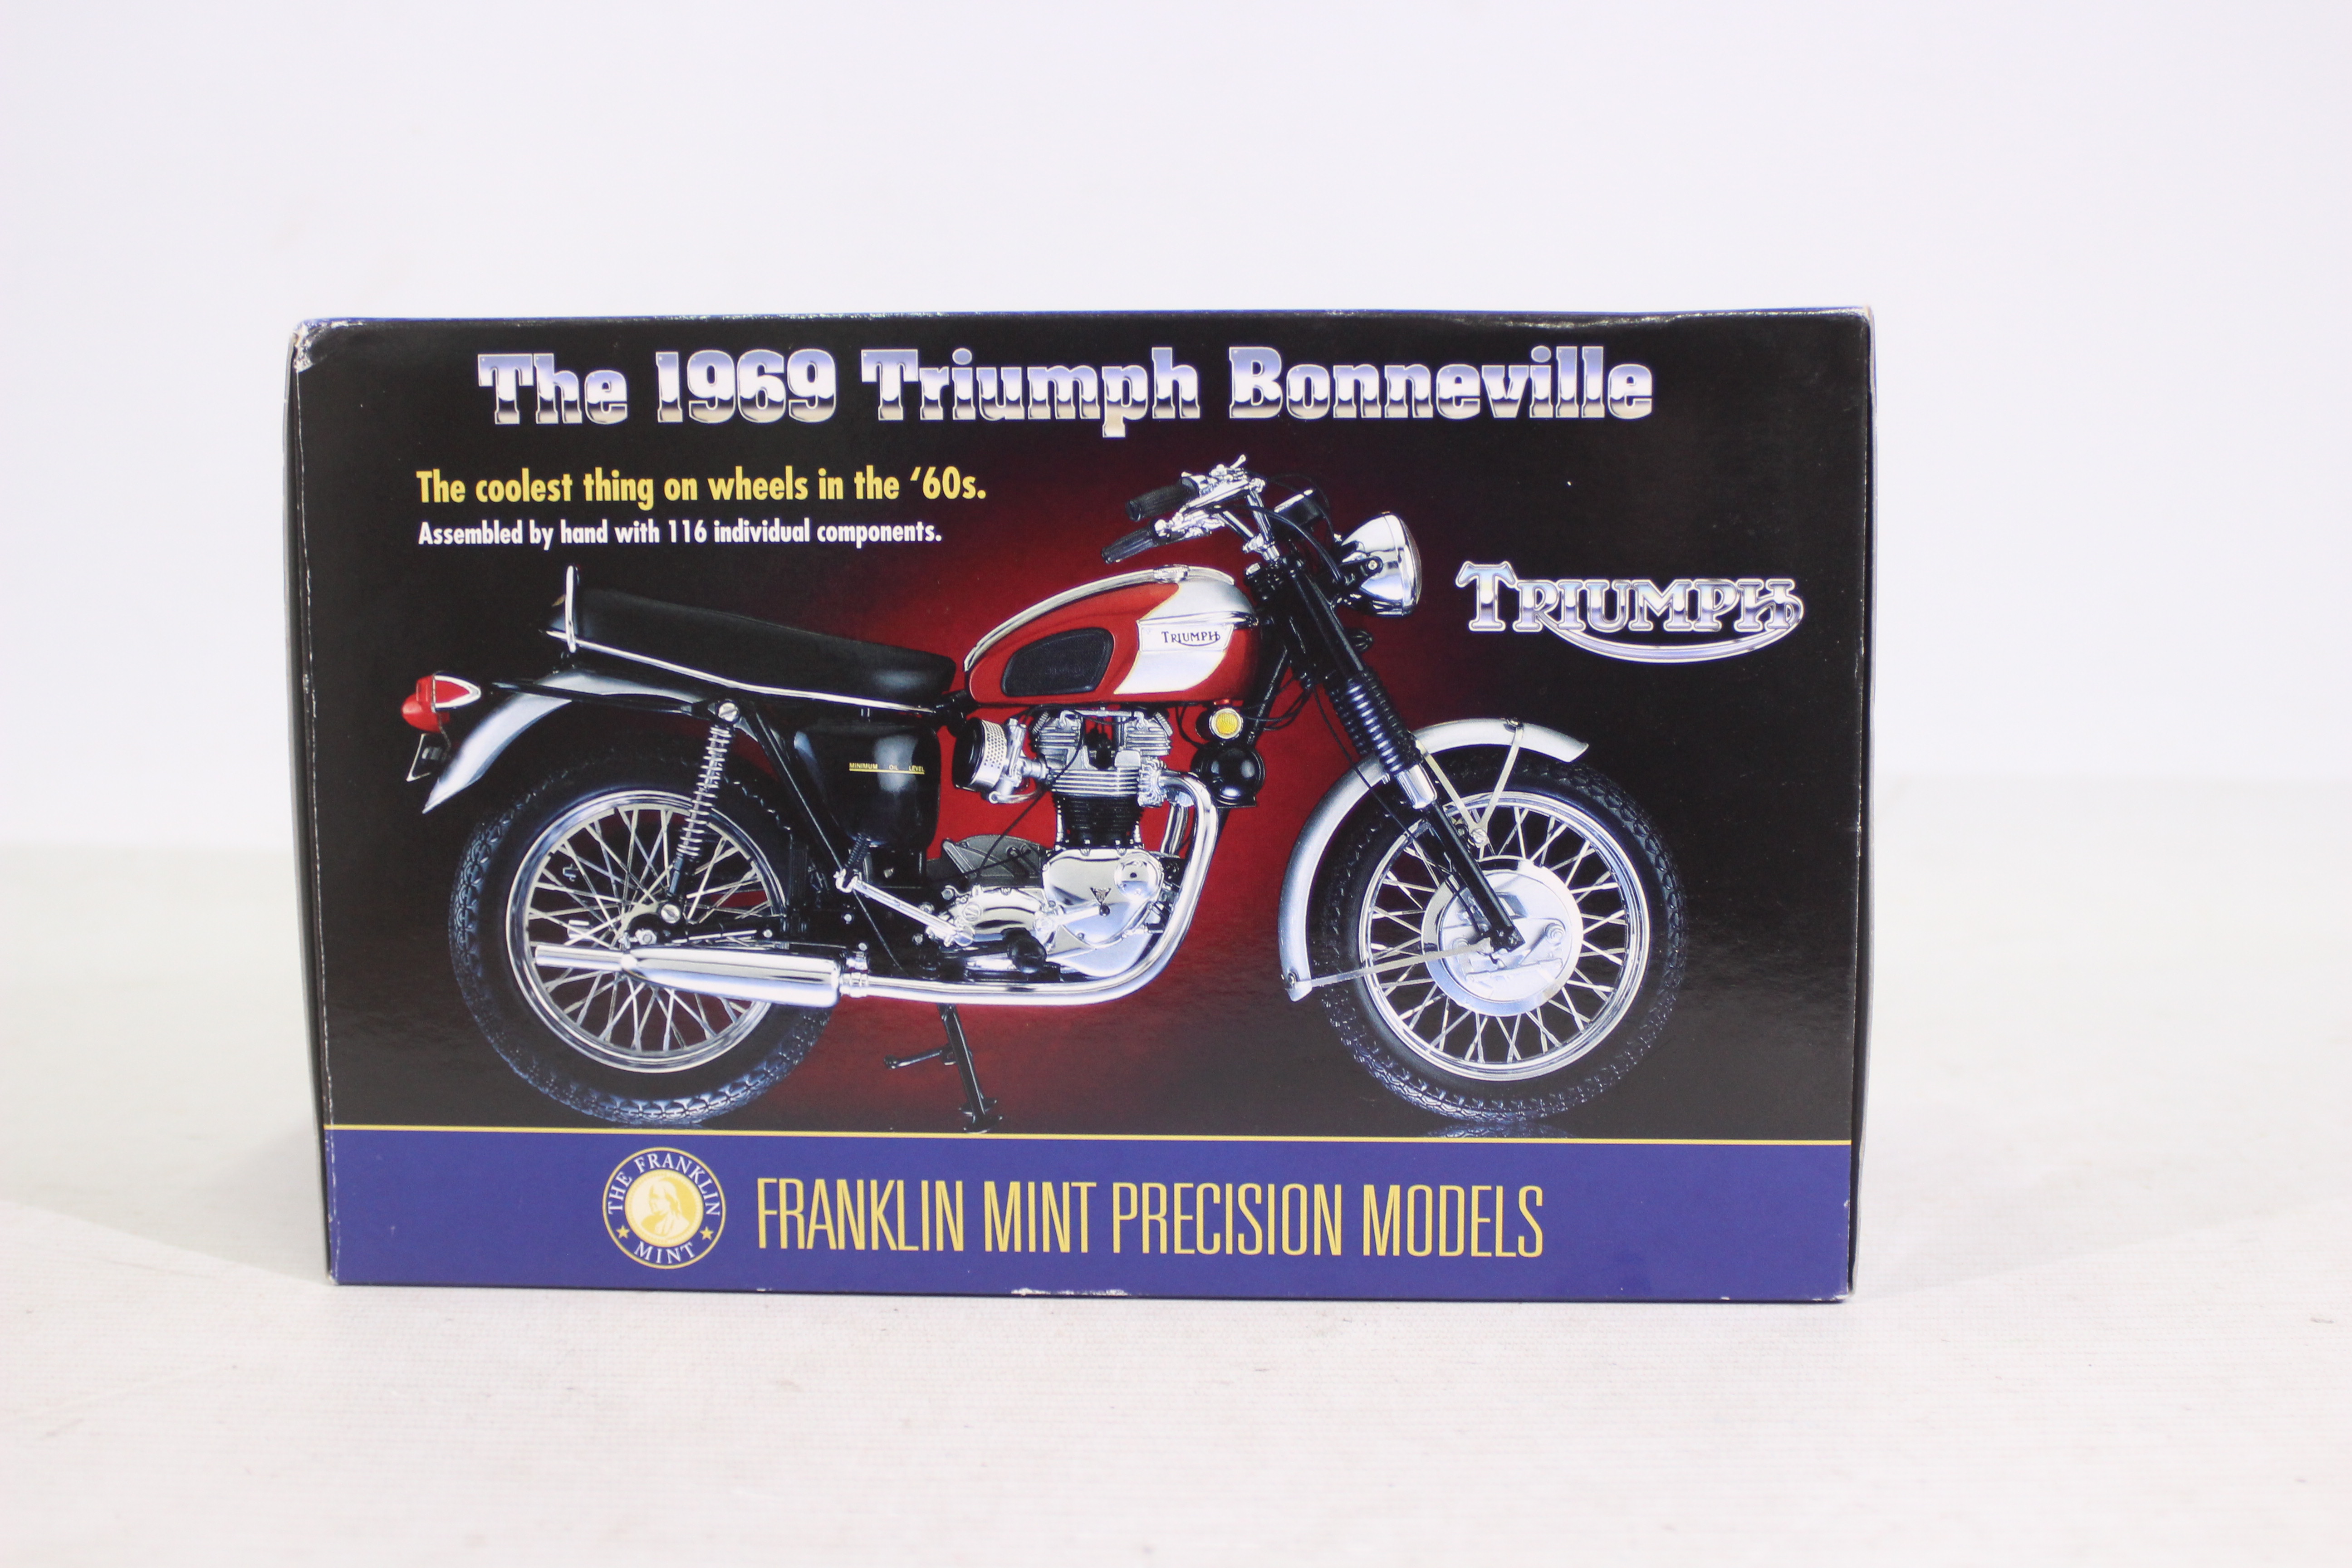 Franklin Mint Precision Models - A Franklin Mint Diecast 1:10 model of a 1969 Triumph Bonneville - Image 2 of 10